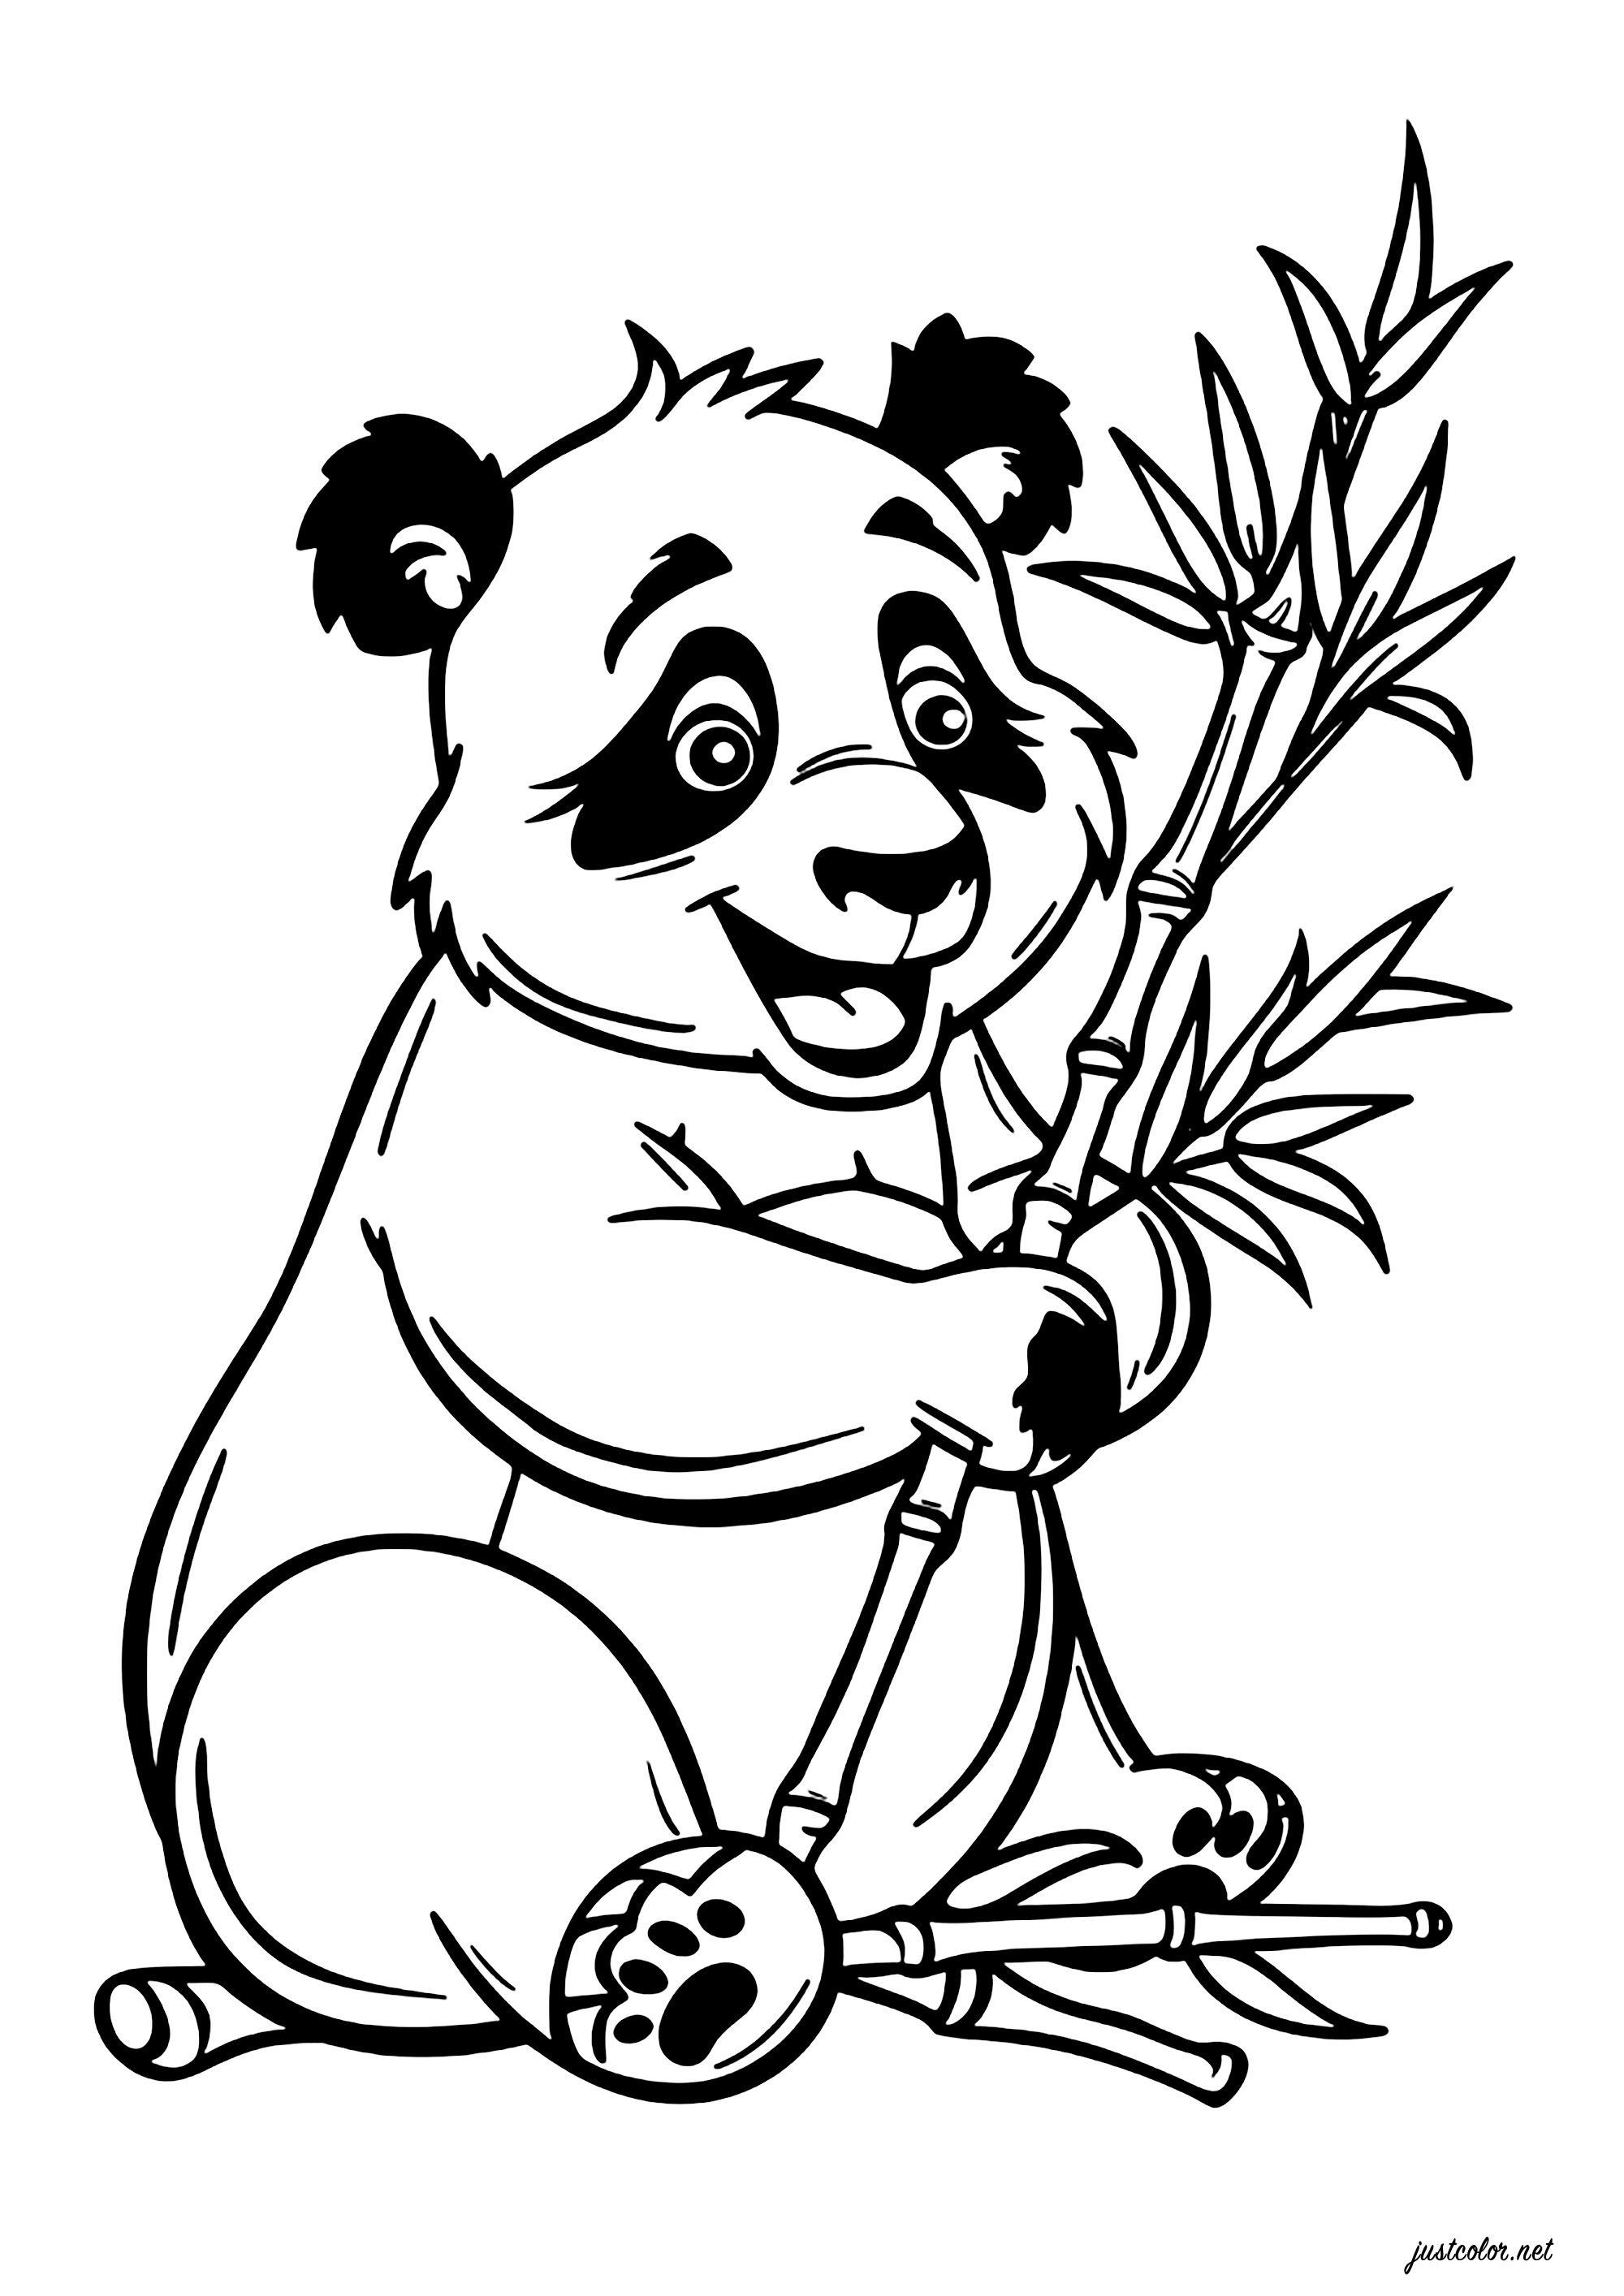 Jeune panda qui mange du bambou. Afin d'ingérer environ 20 kg quotidiennement tout en optimisant l'absorption des nutriments, le panda sélectionne uniquement les parties tendres du bambou, qu'il mâche méticuleusement pendant de longues périodes.Cela représente un investissement considérable en temps pour sa nutrition quotidienne !